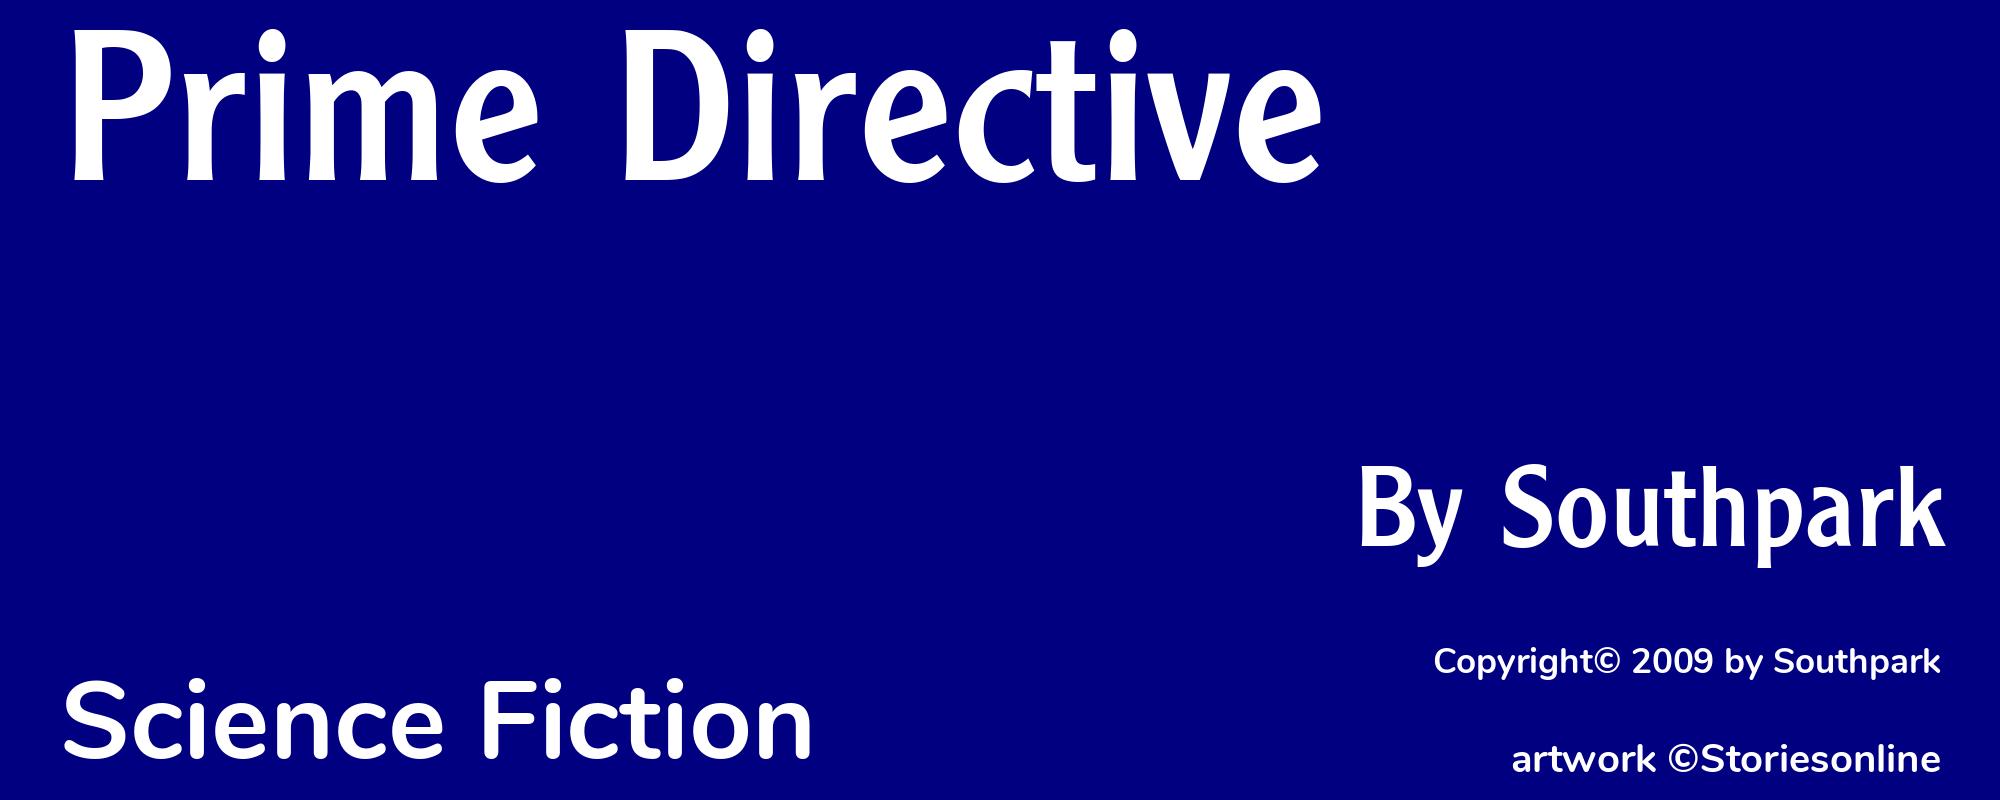 Prime Directive - Cover